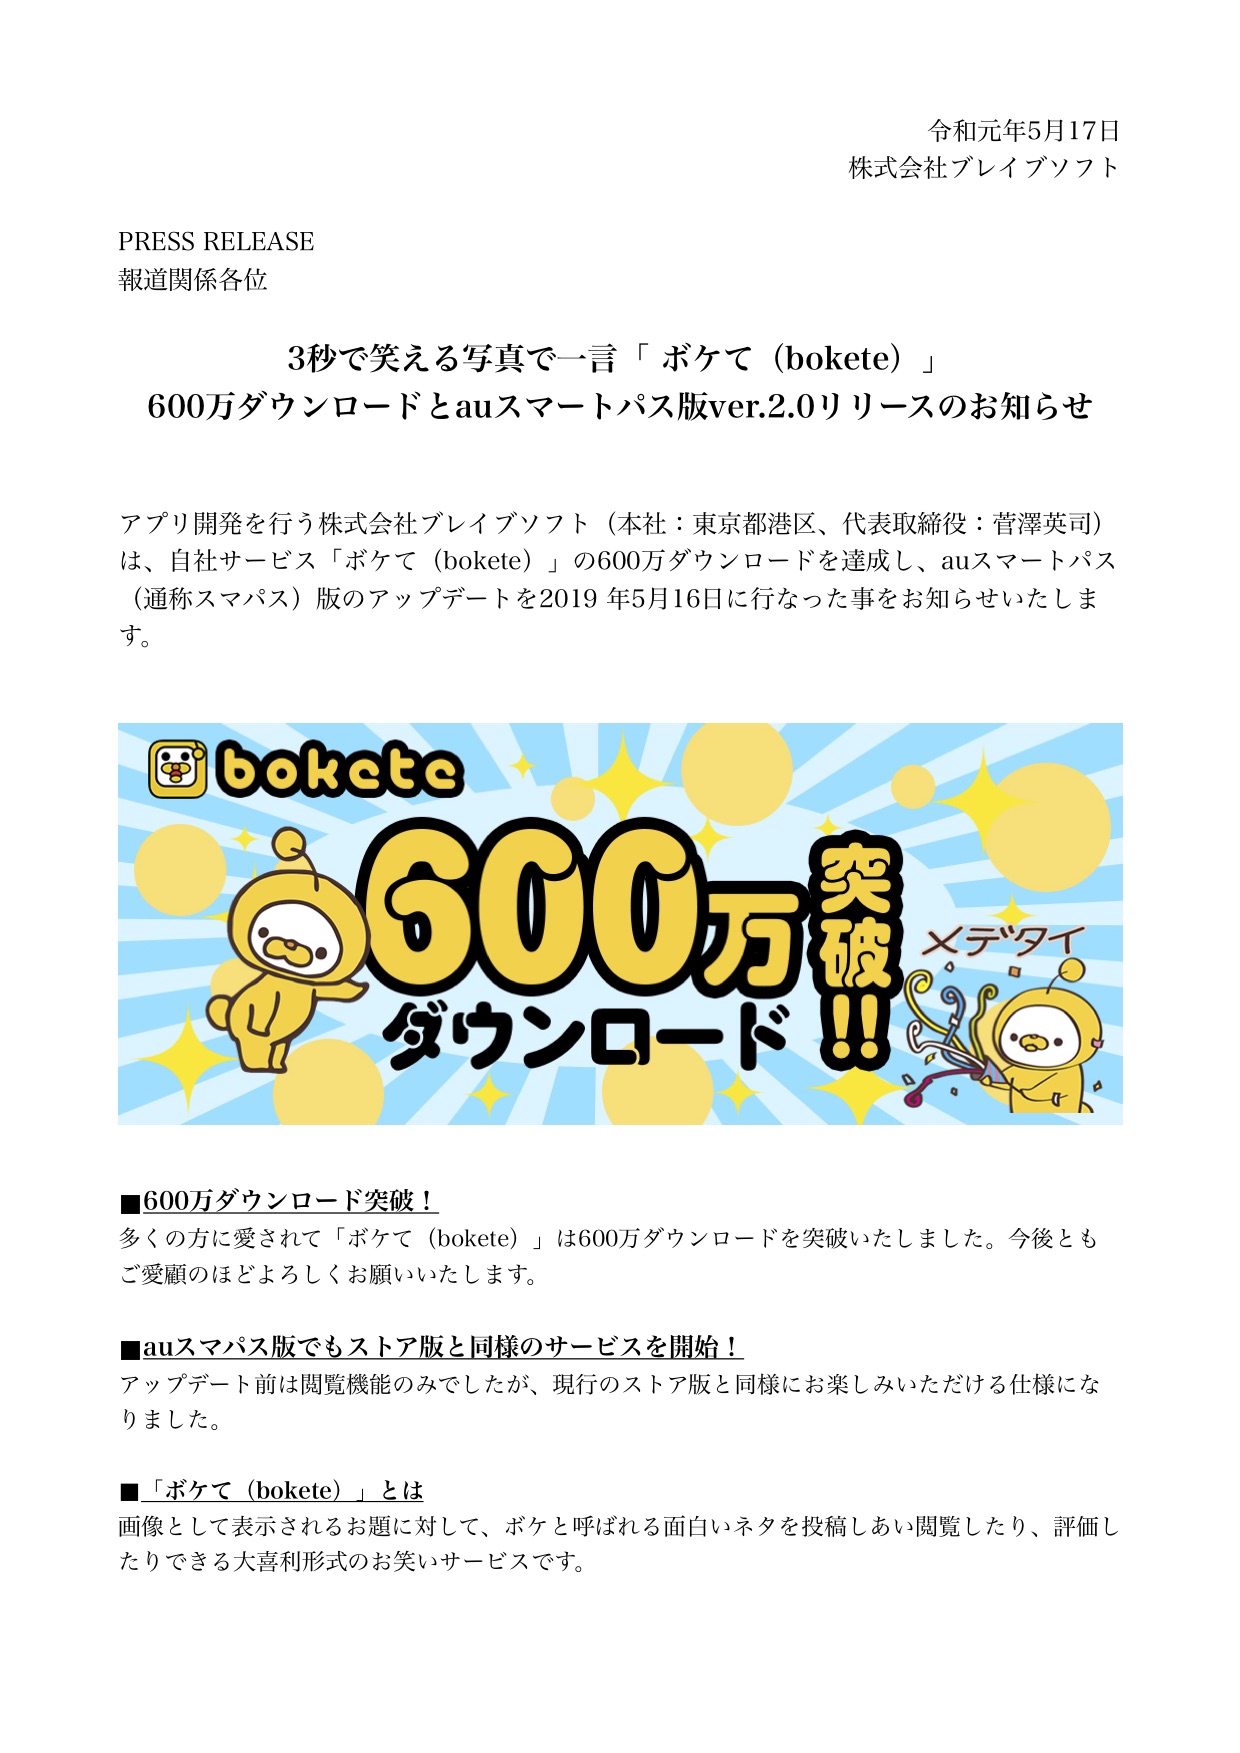 3秒で笑える写真で一言 ボケて Bokete 600万ダウンロードとauスマートパス版ver 2 0リリースのお知らせ Bravesoft ブレイブソフト 東京